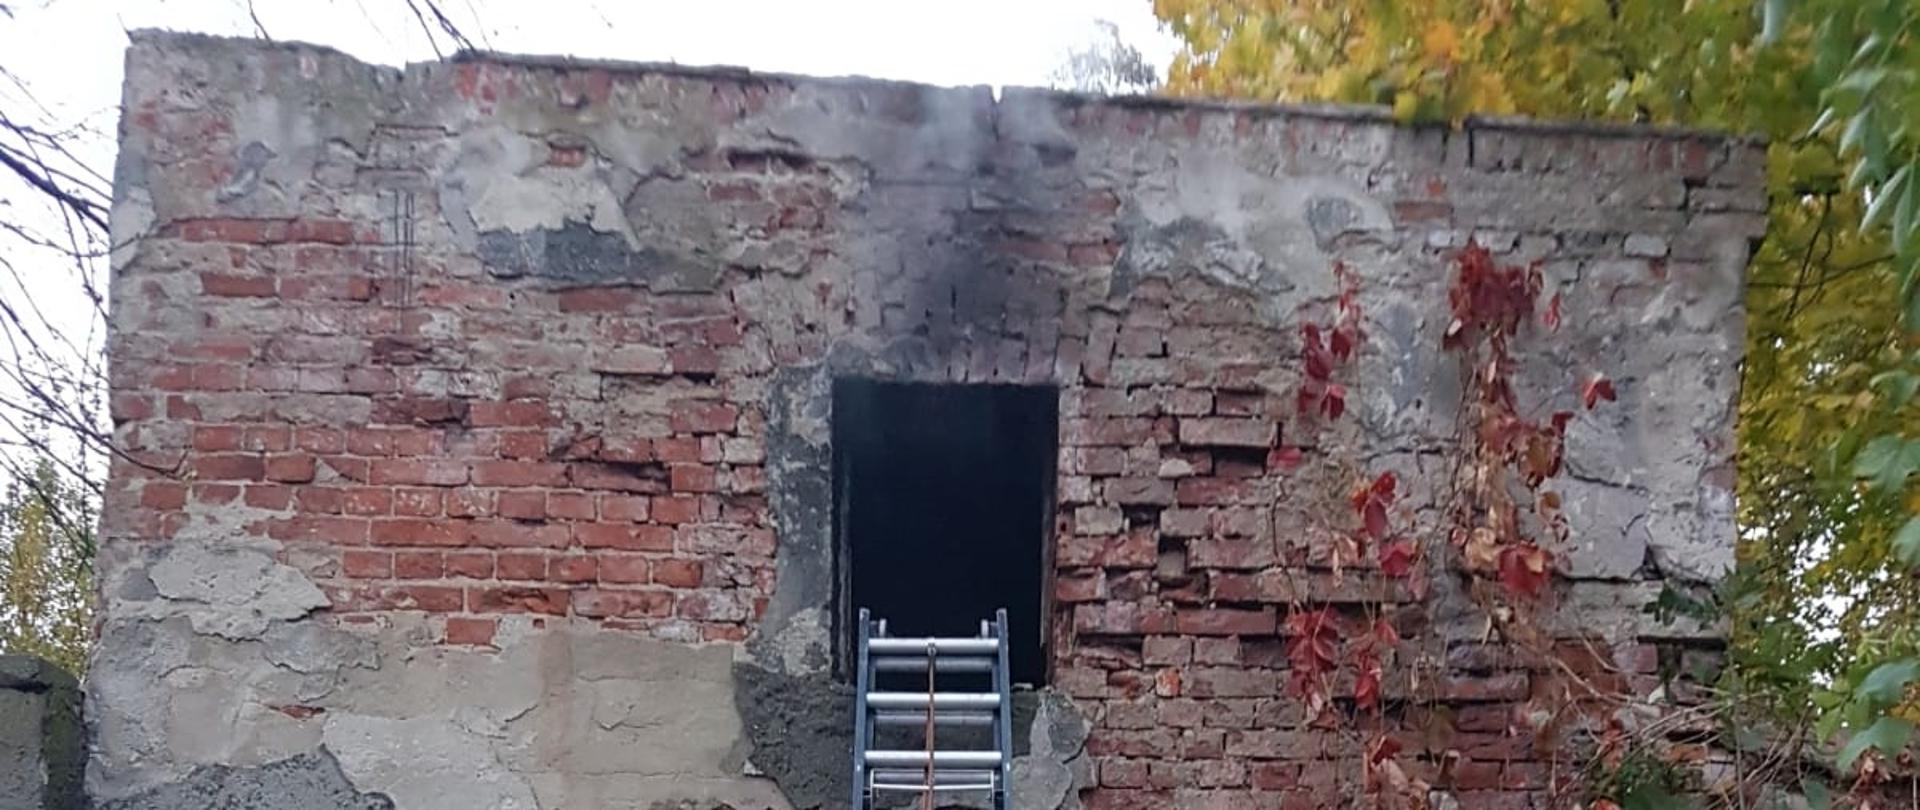 W opuszczonym budynku magazynowym przy ulicy Folwarcznej w Żarach powstał pożar na piętrze. Na zdjęciu znajduje się drabina strażacka oparta o mur budynku.